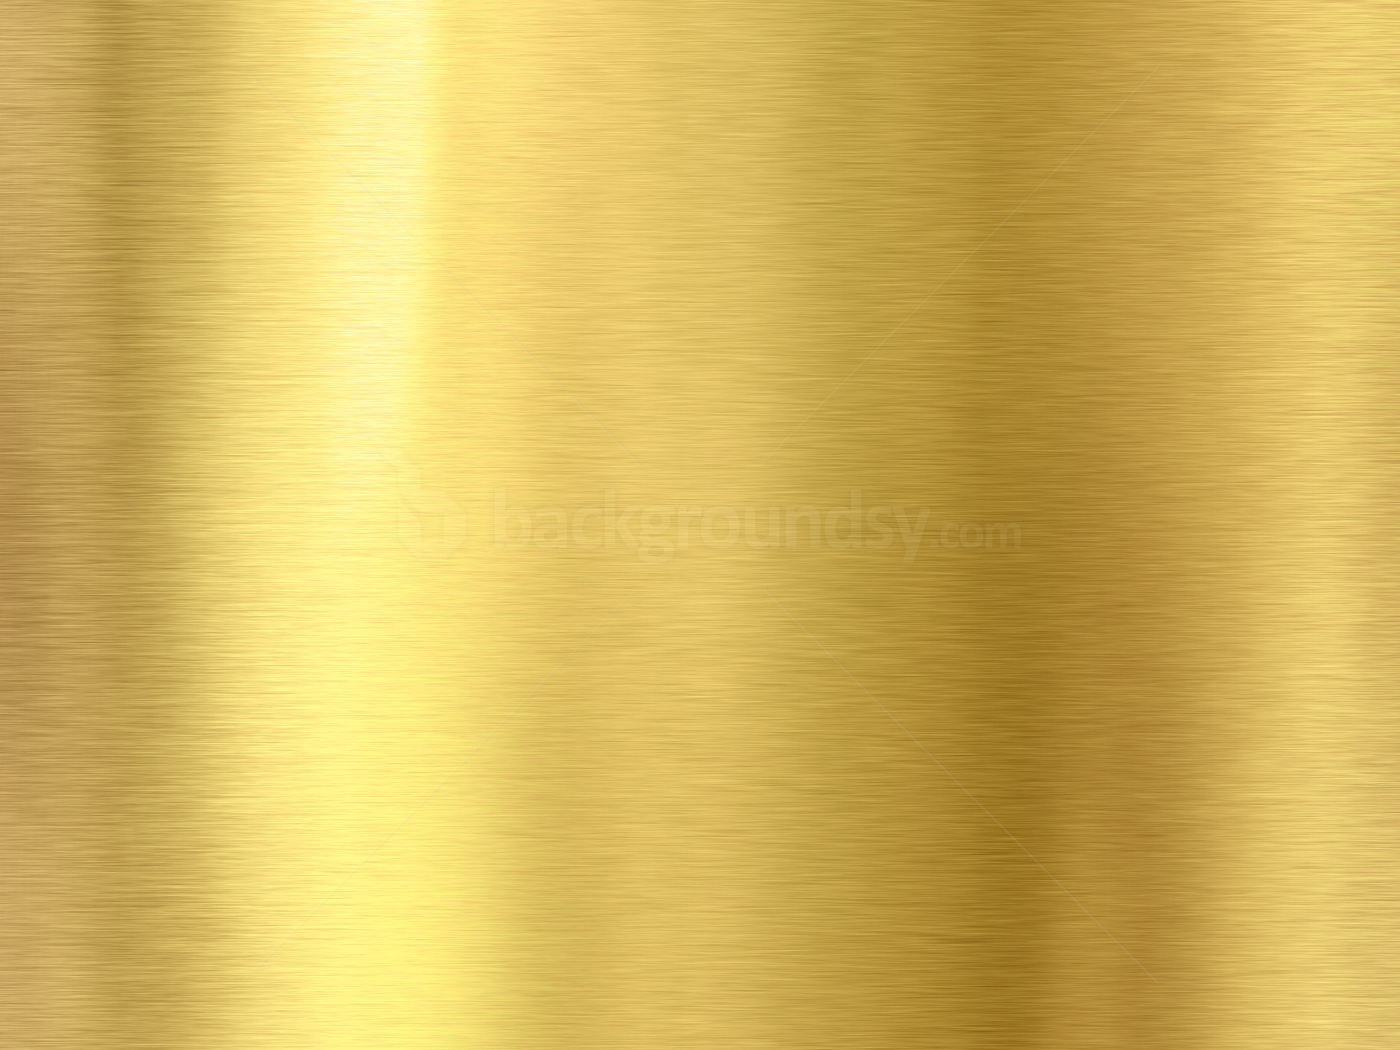 Shiny Metallic Background Gold